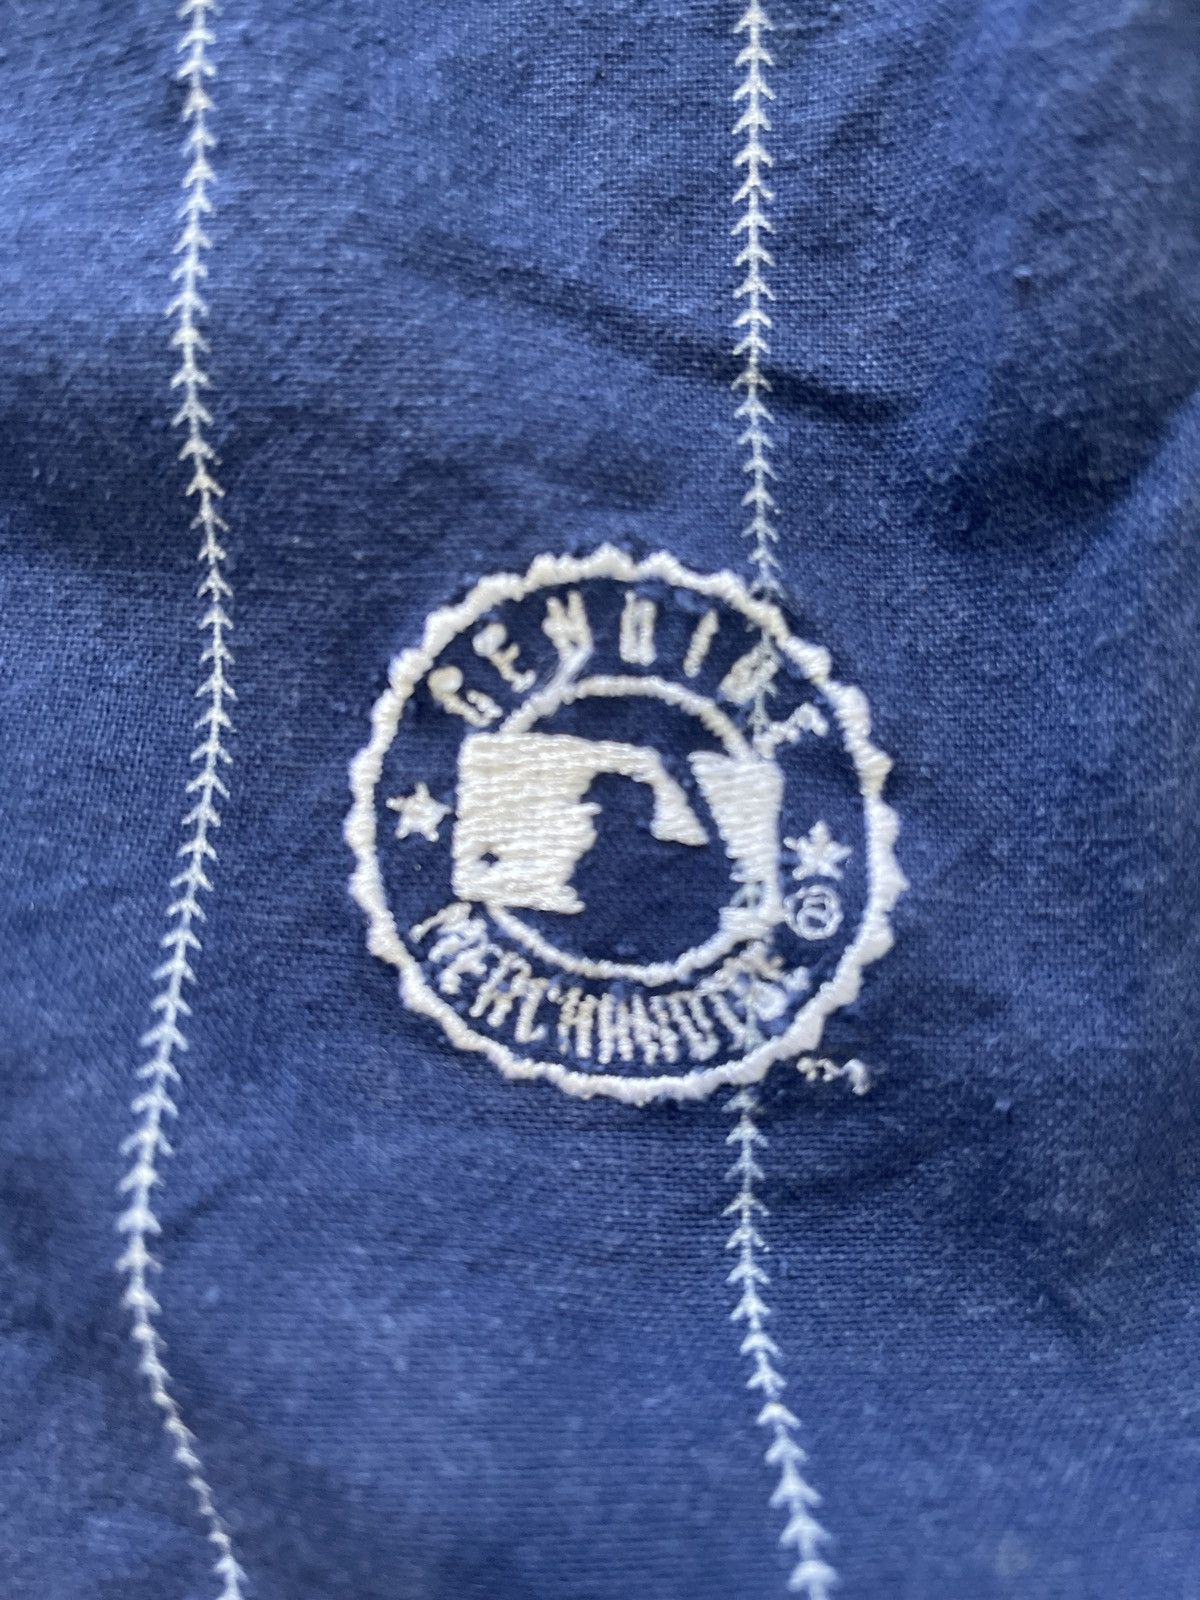 Genuine Merchandise By True Fan Vintage Bernie Williams Pinstripe Yankee Jersey Size US XL / EU 56 / 4 - 2 Preview